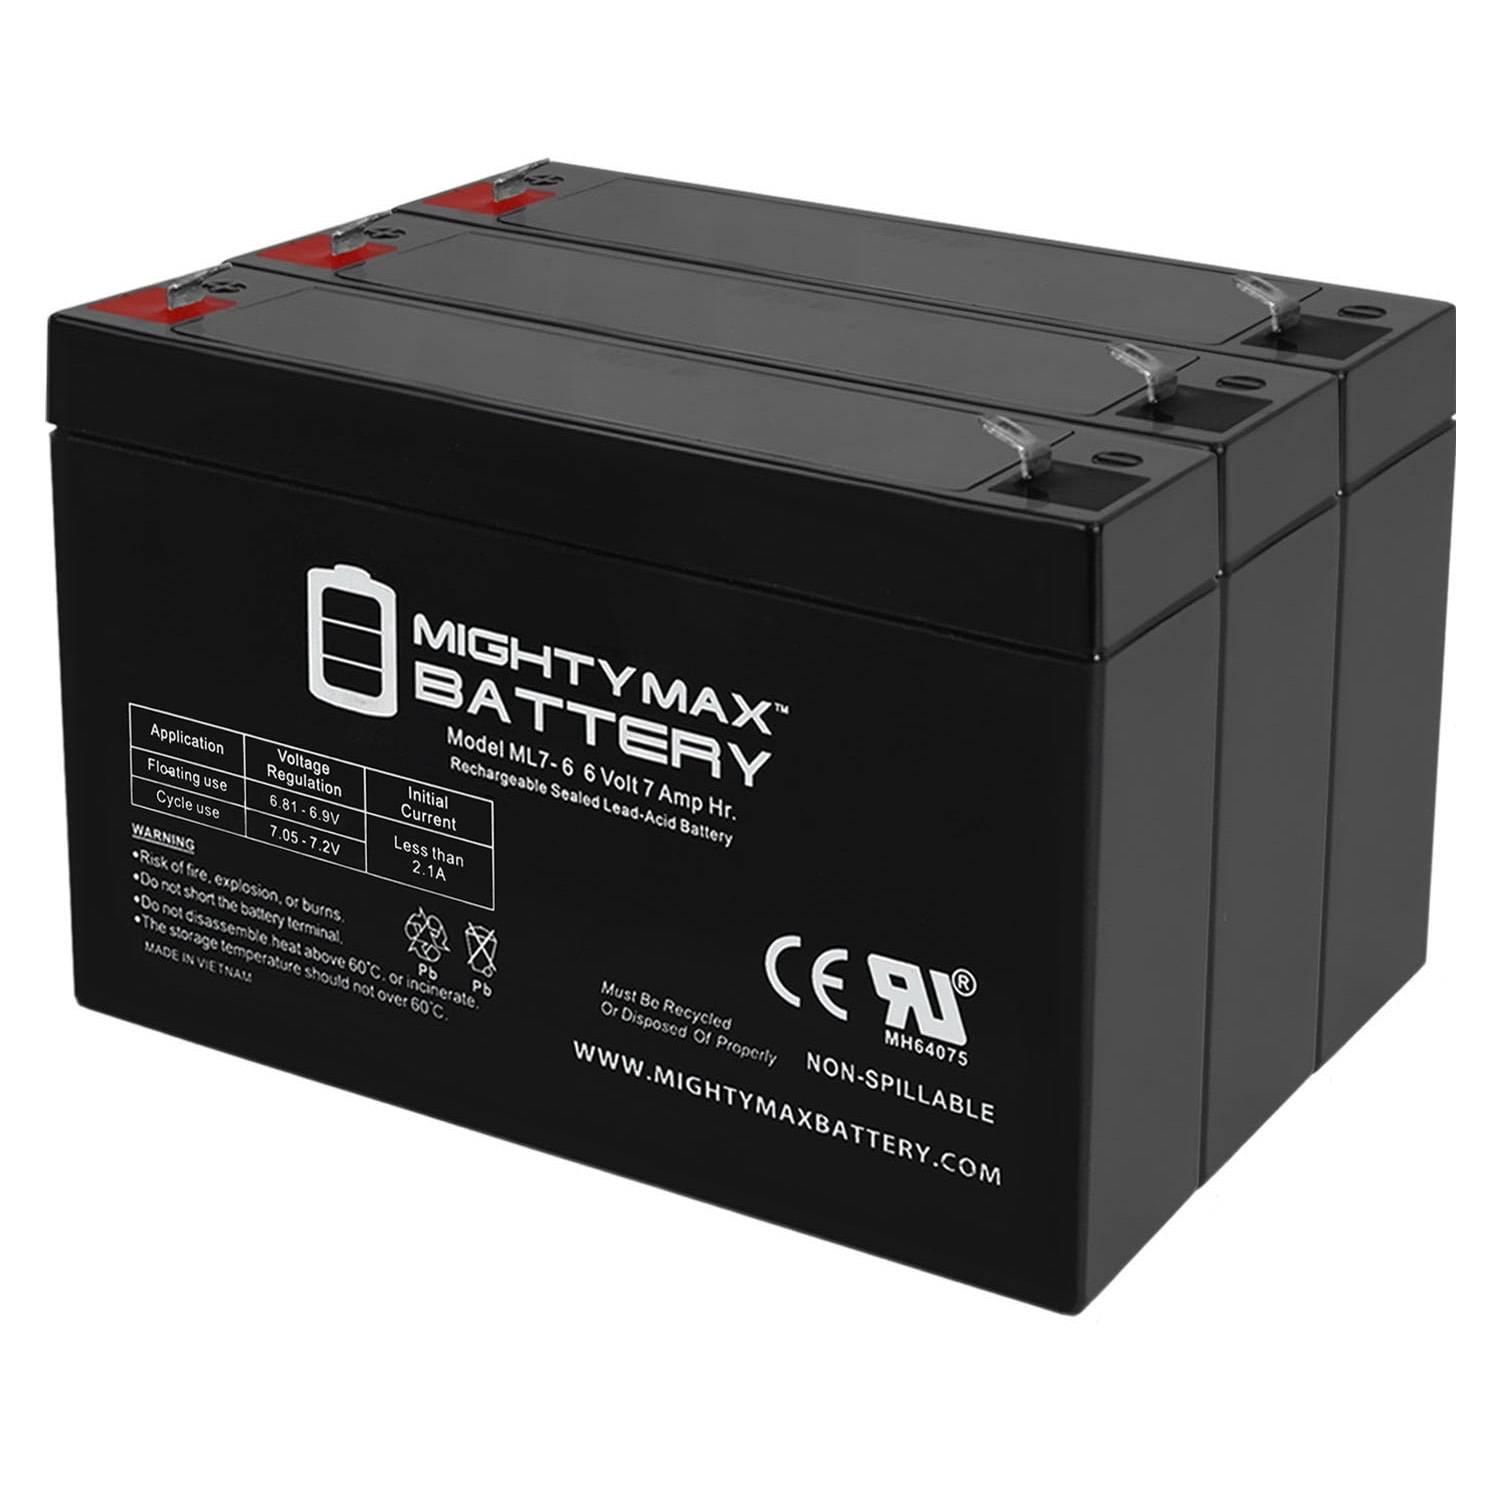 Batterie 6V / 7Ah zzgl. 7,50 € Batteriepfand, 20,00 €